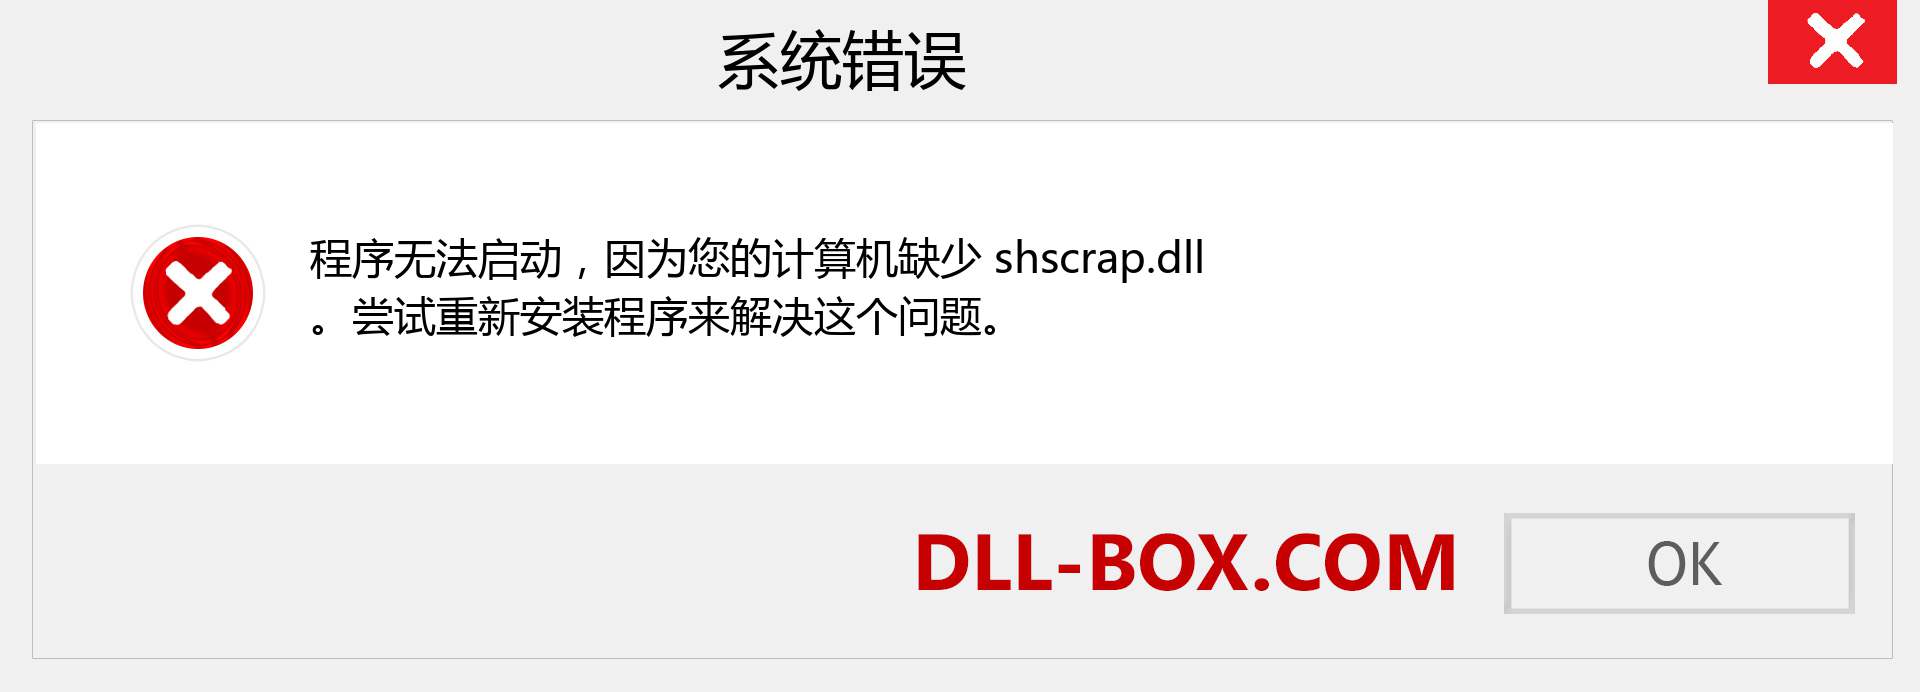 shscrap.dll 文件丢失？。 适用于 Windows 7、8、10 的下载 - 修复 Windows、照片、图像上的 shscrap dll 丢失错误